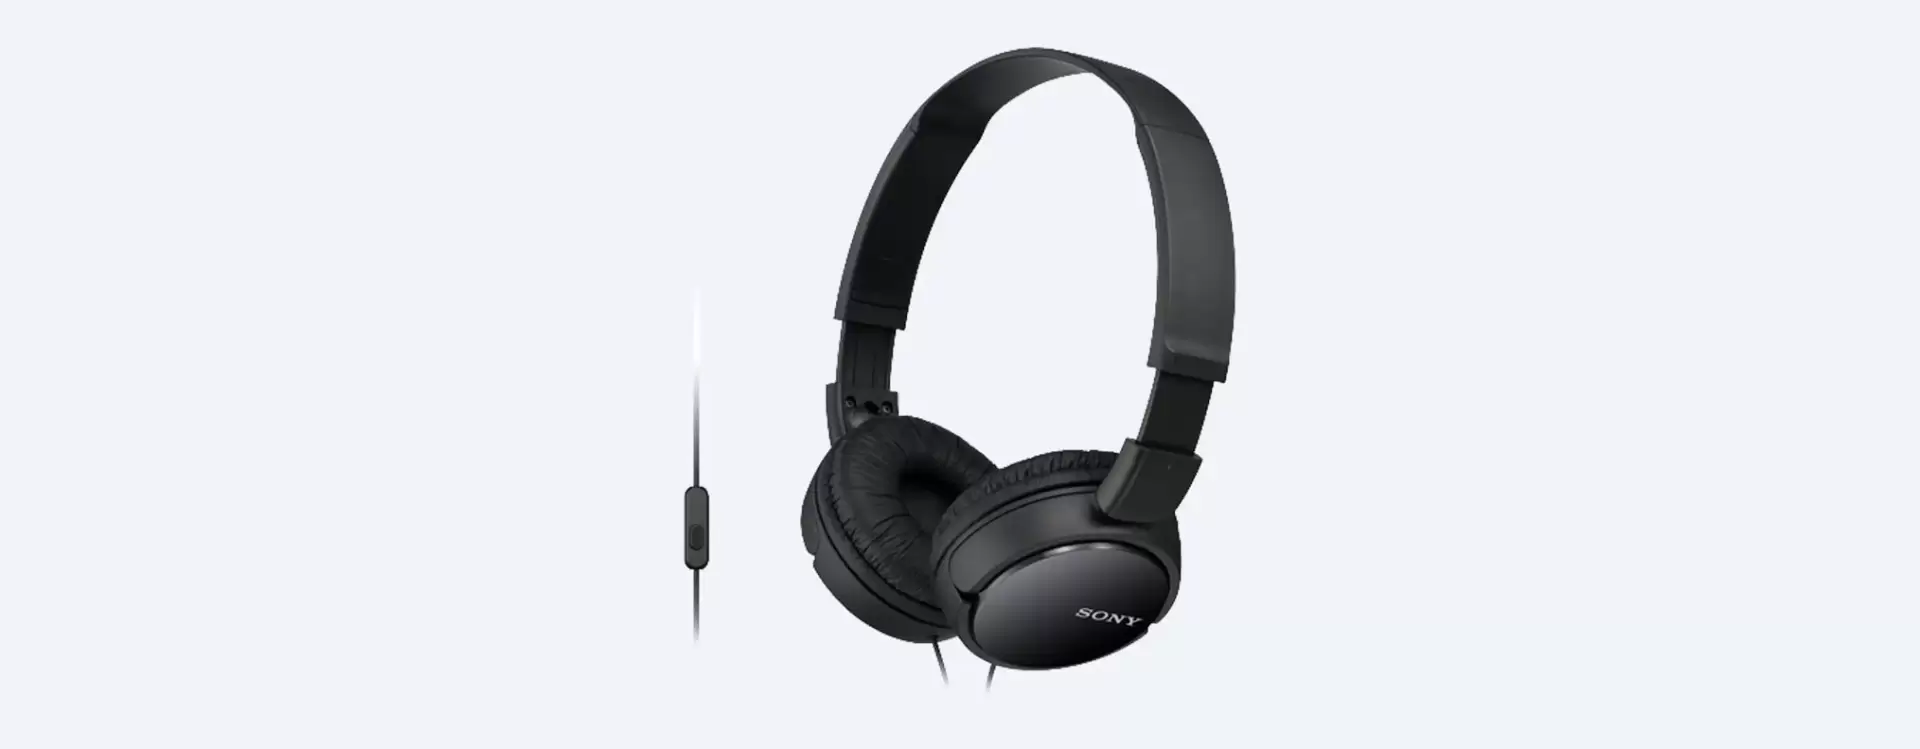 אוזניות Sony MDR-ZX110AP עם מיקרופון צבע שחור תמונה 3